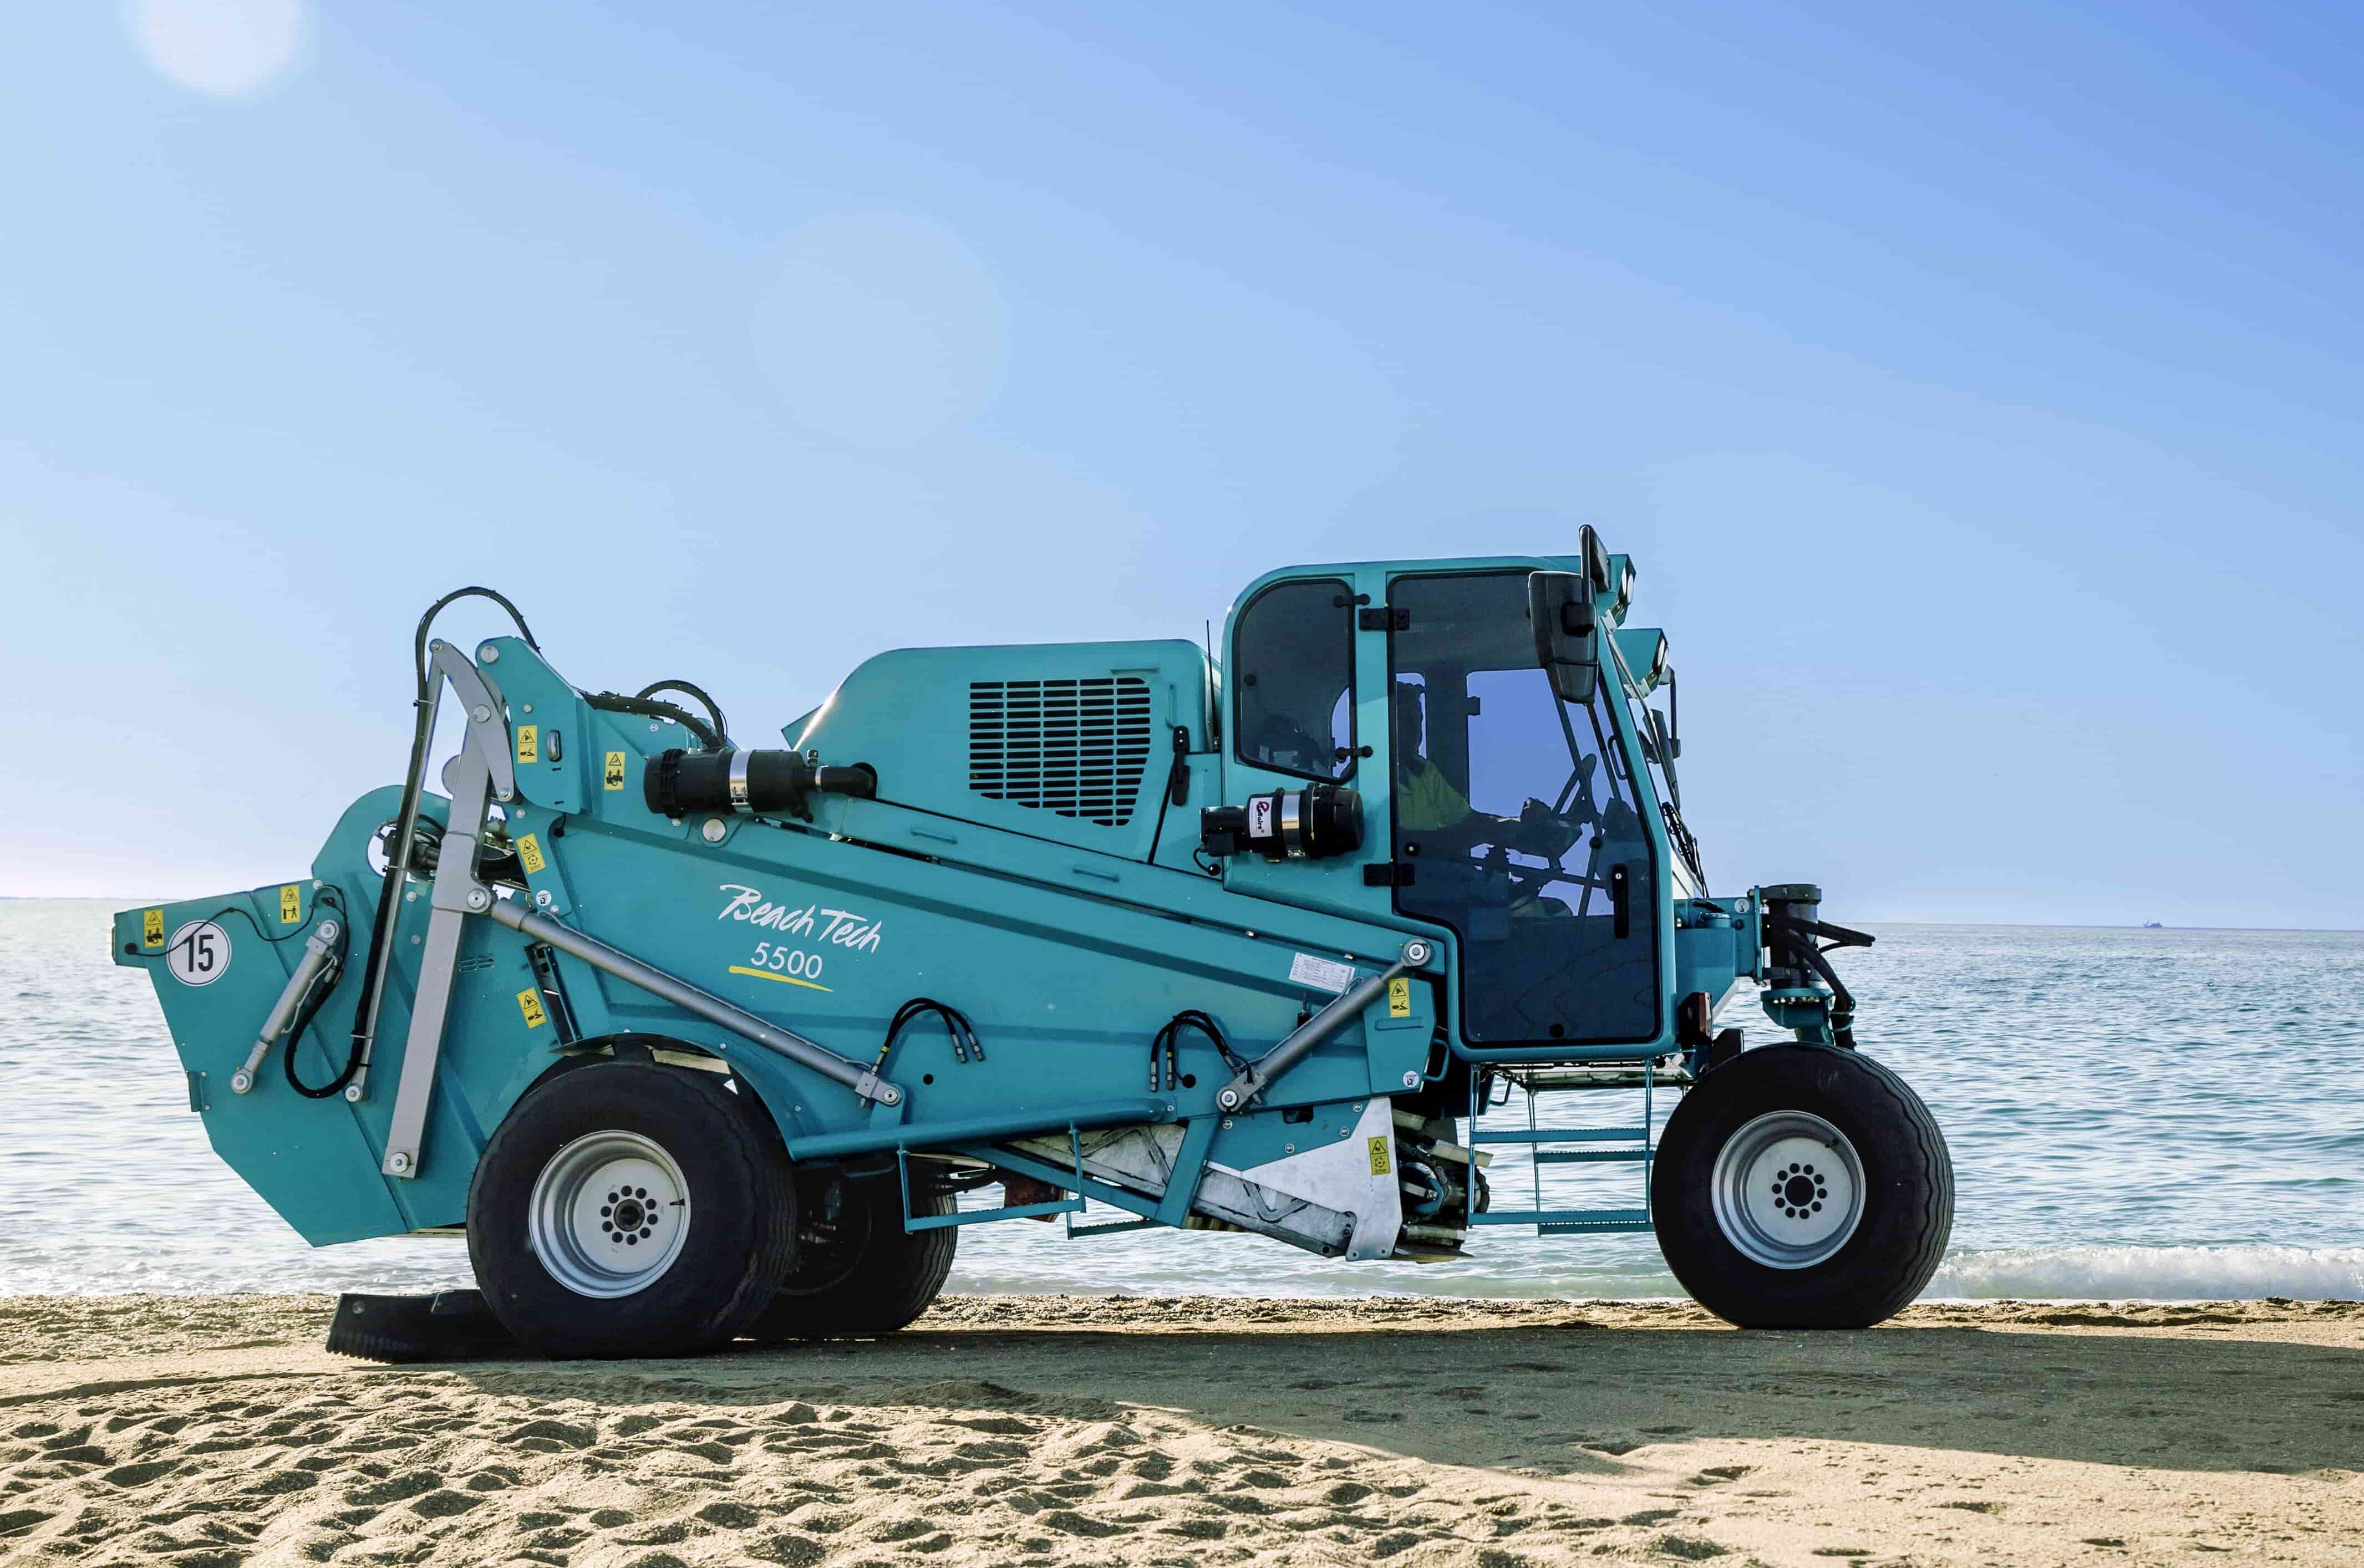 The new BeachTech 5500 beach cleaner on the beach